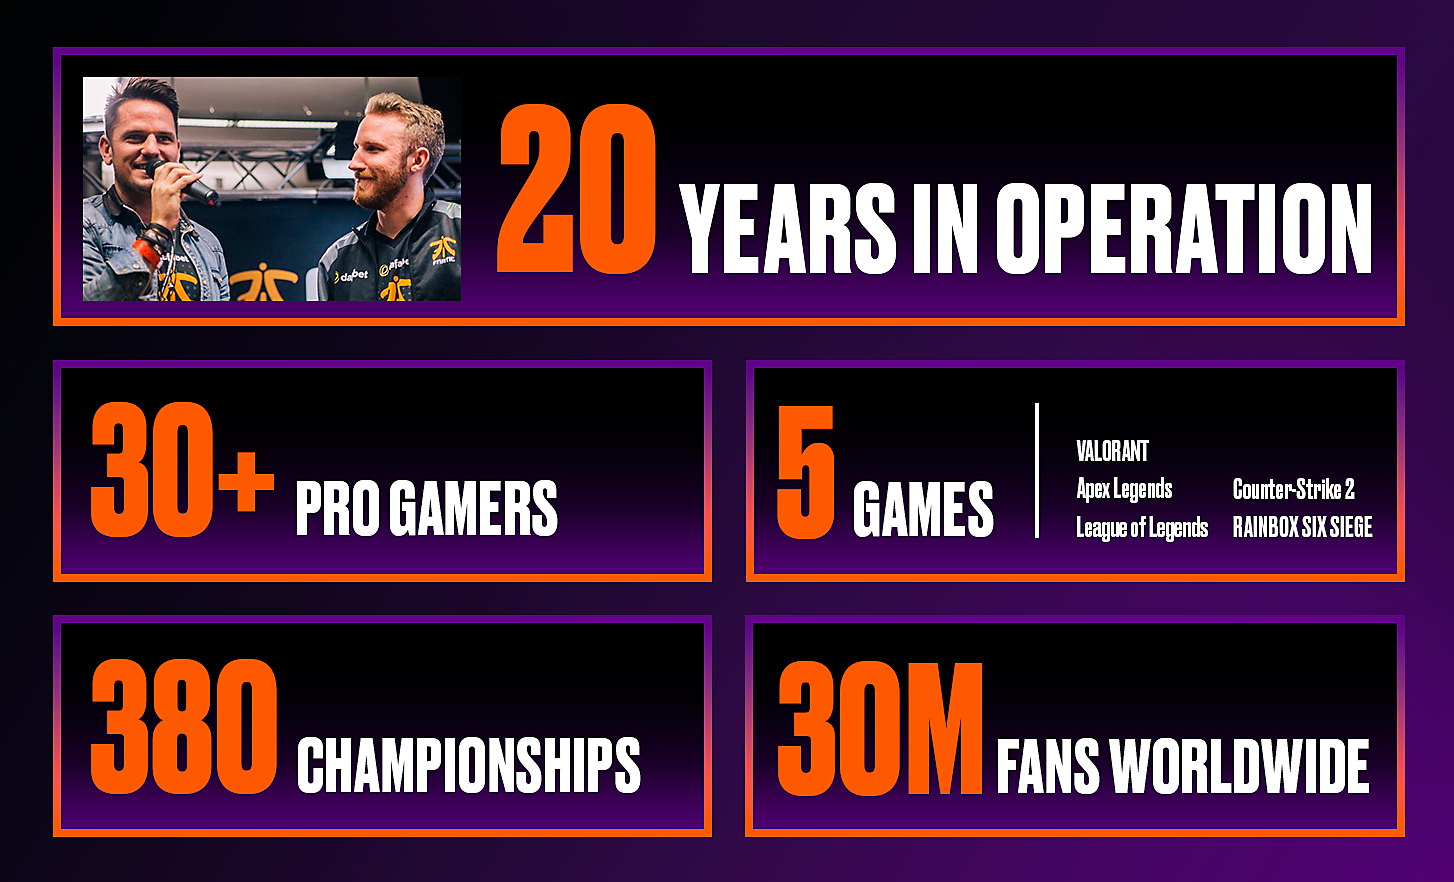 V piatich políčkach sa zobrazujú štatistiky organizácie Fnatic, vrátane rokov činnosti a počtu profesionálnych hráčov, hier, majstrovstiev a fanúšikov